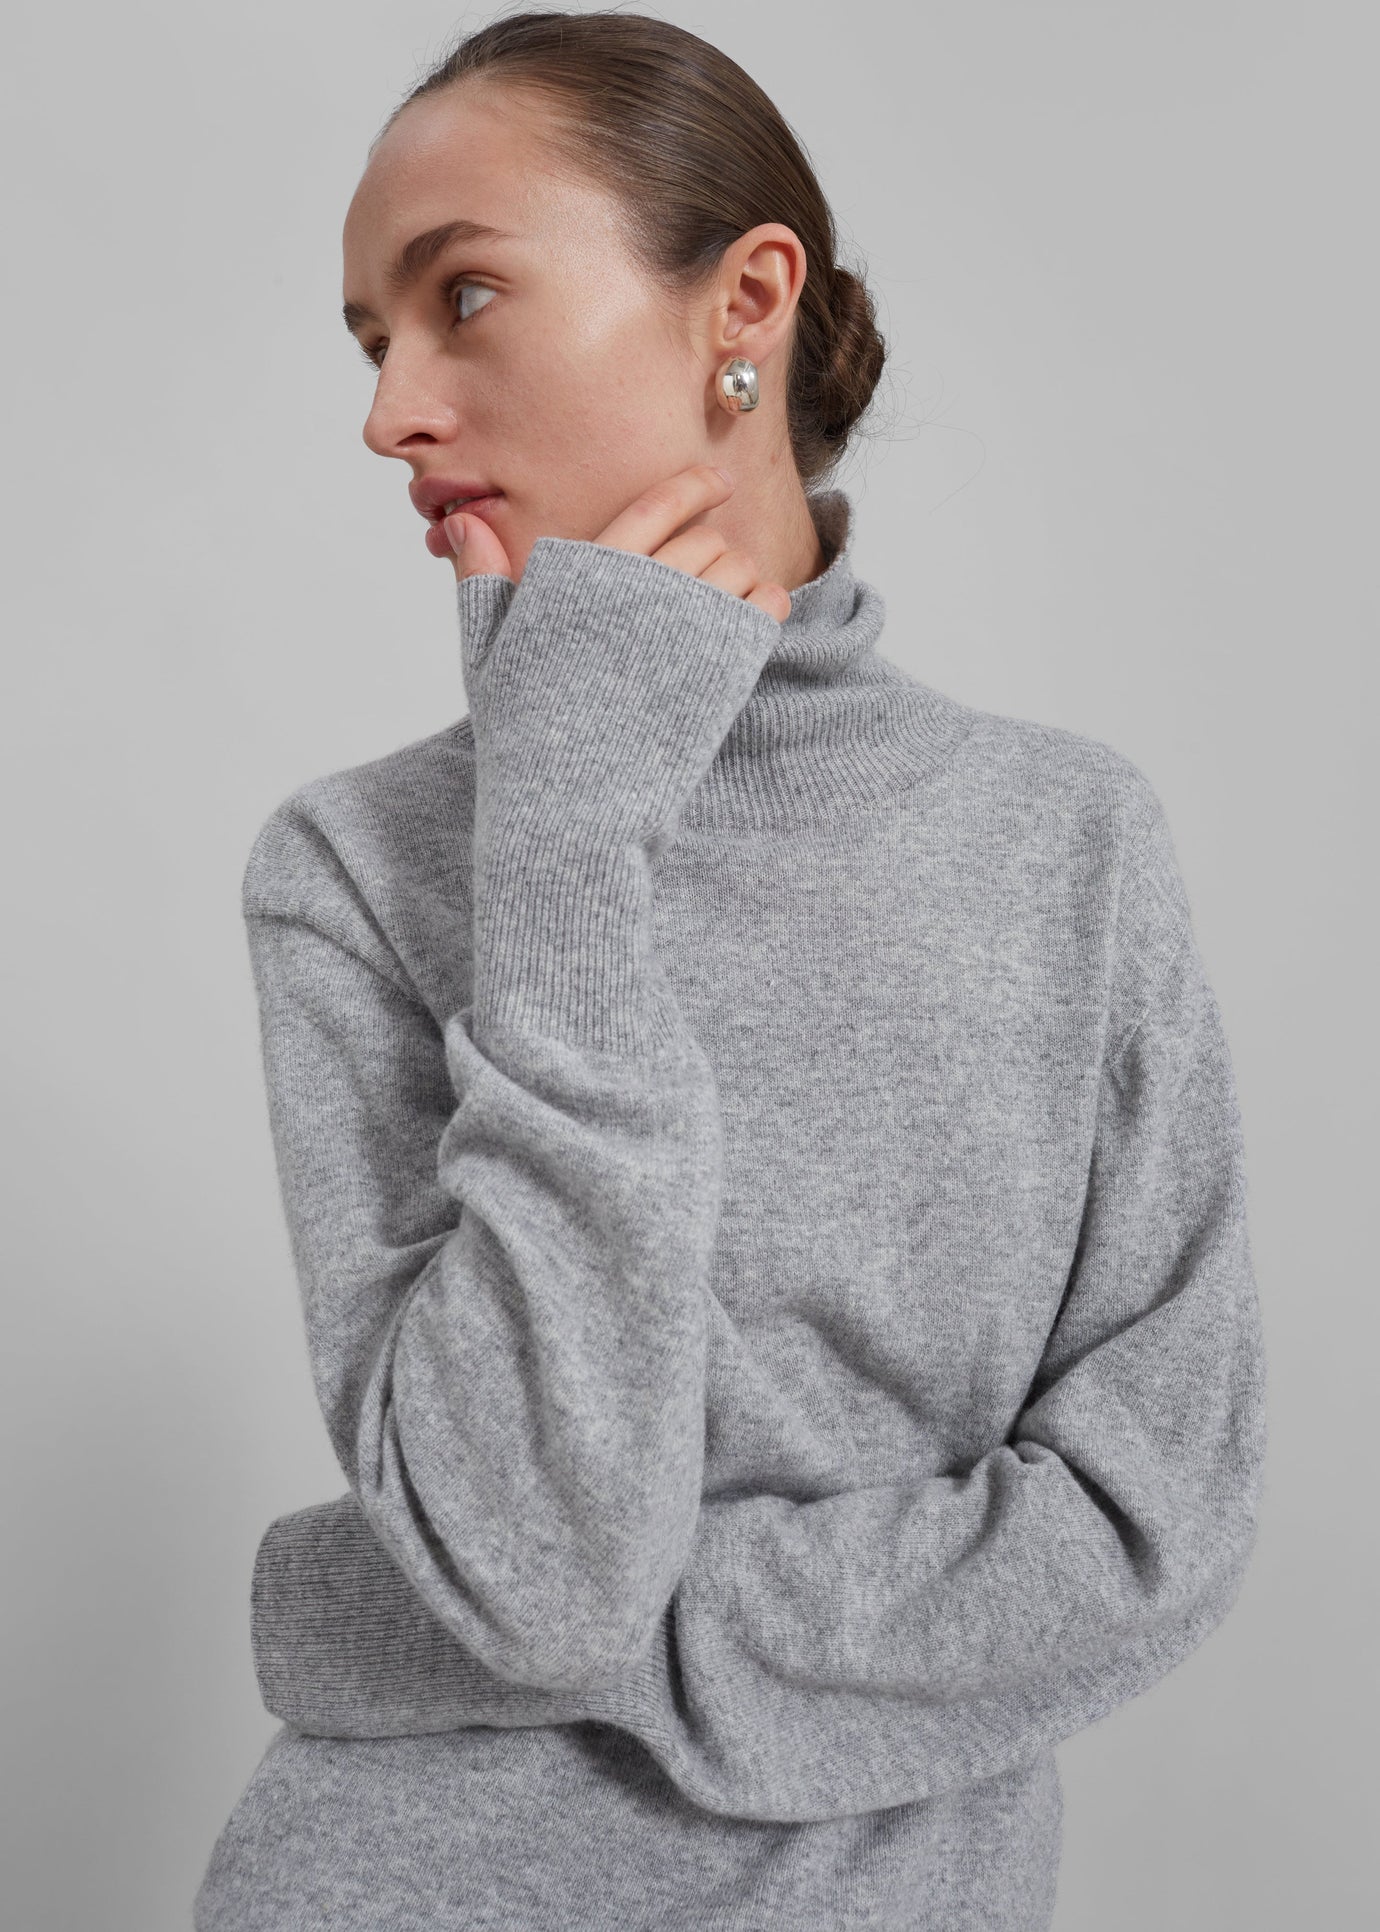 Women's Knitwear, Sweaters & Turtleneck – Frankie Shop Europe